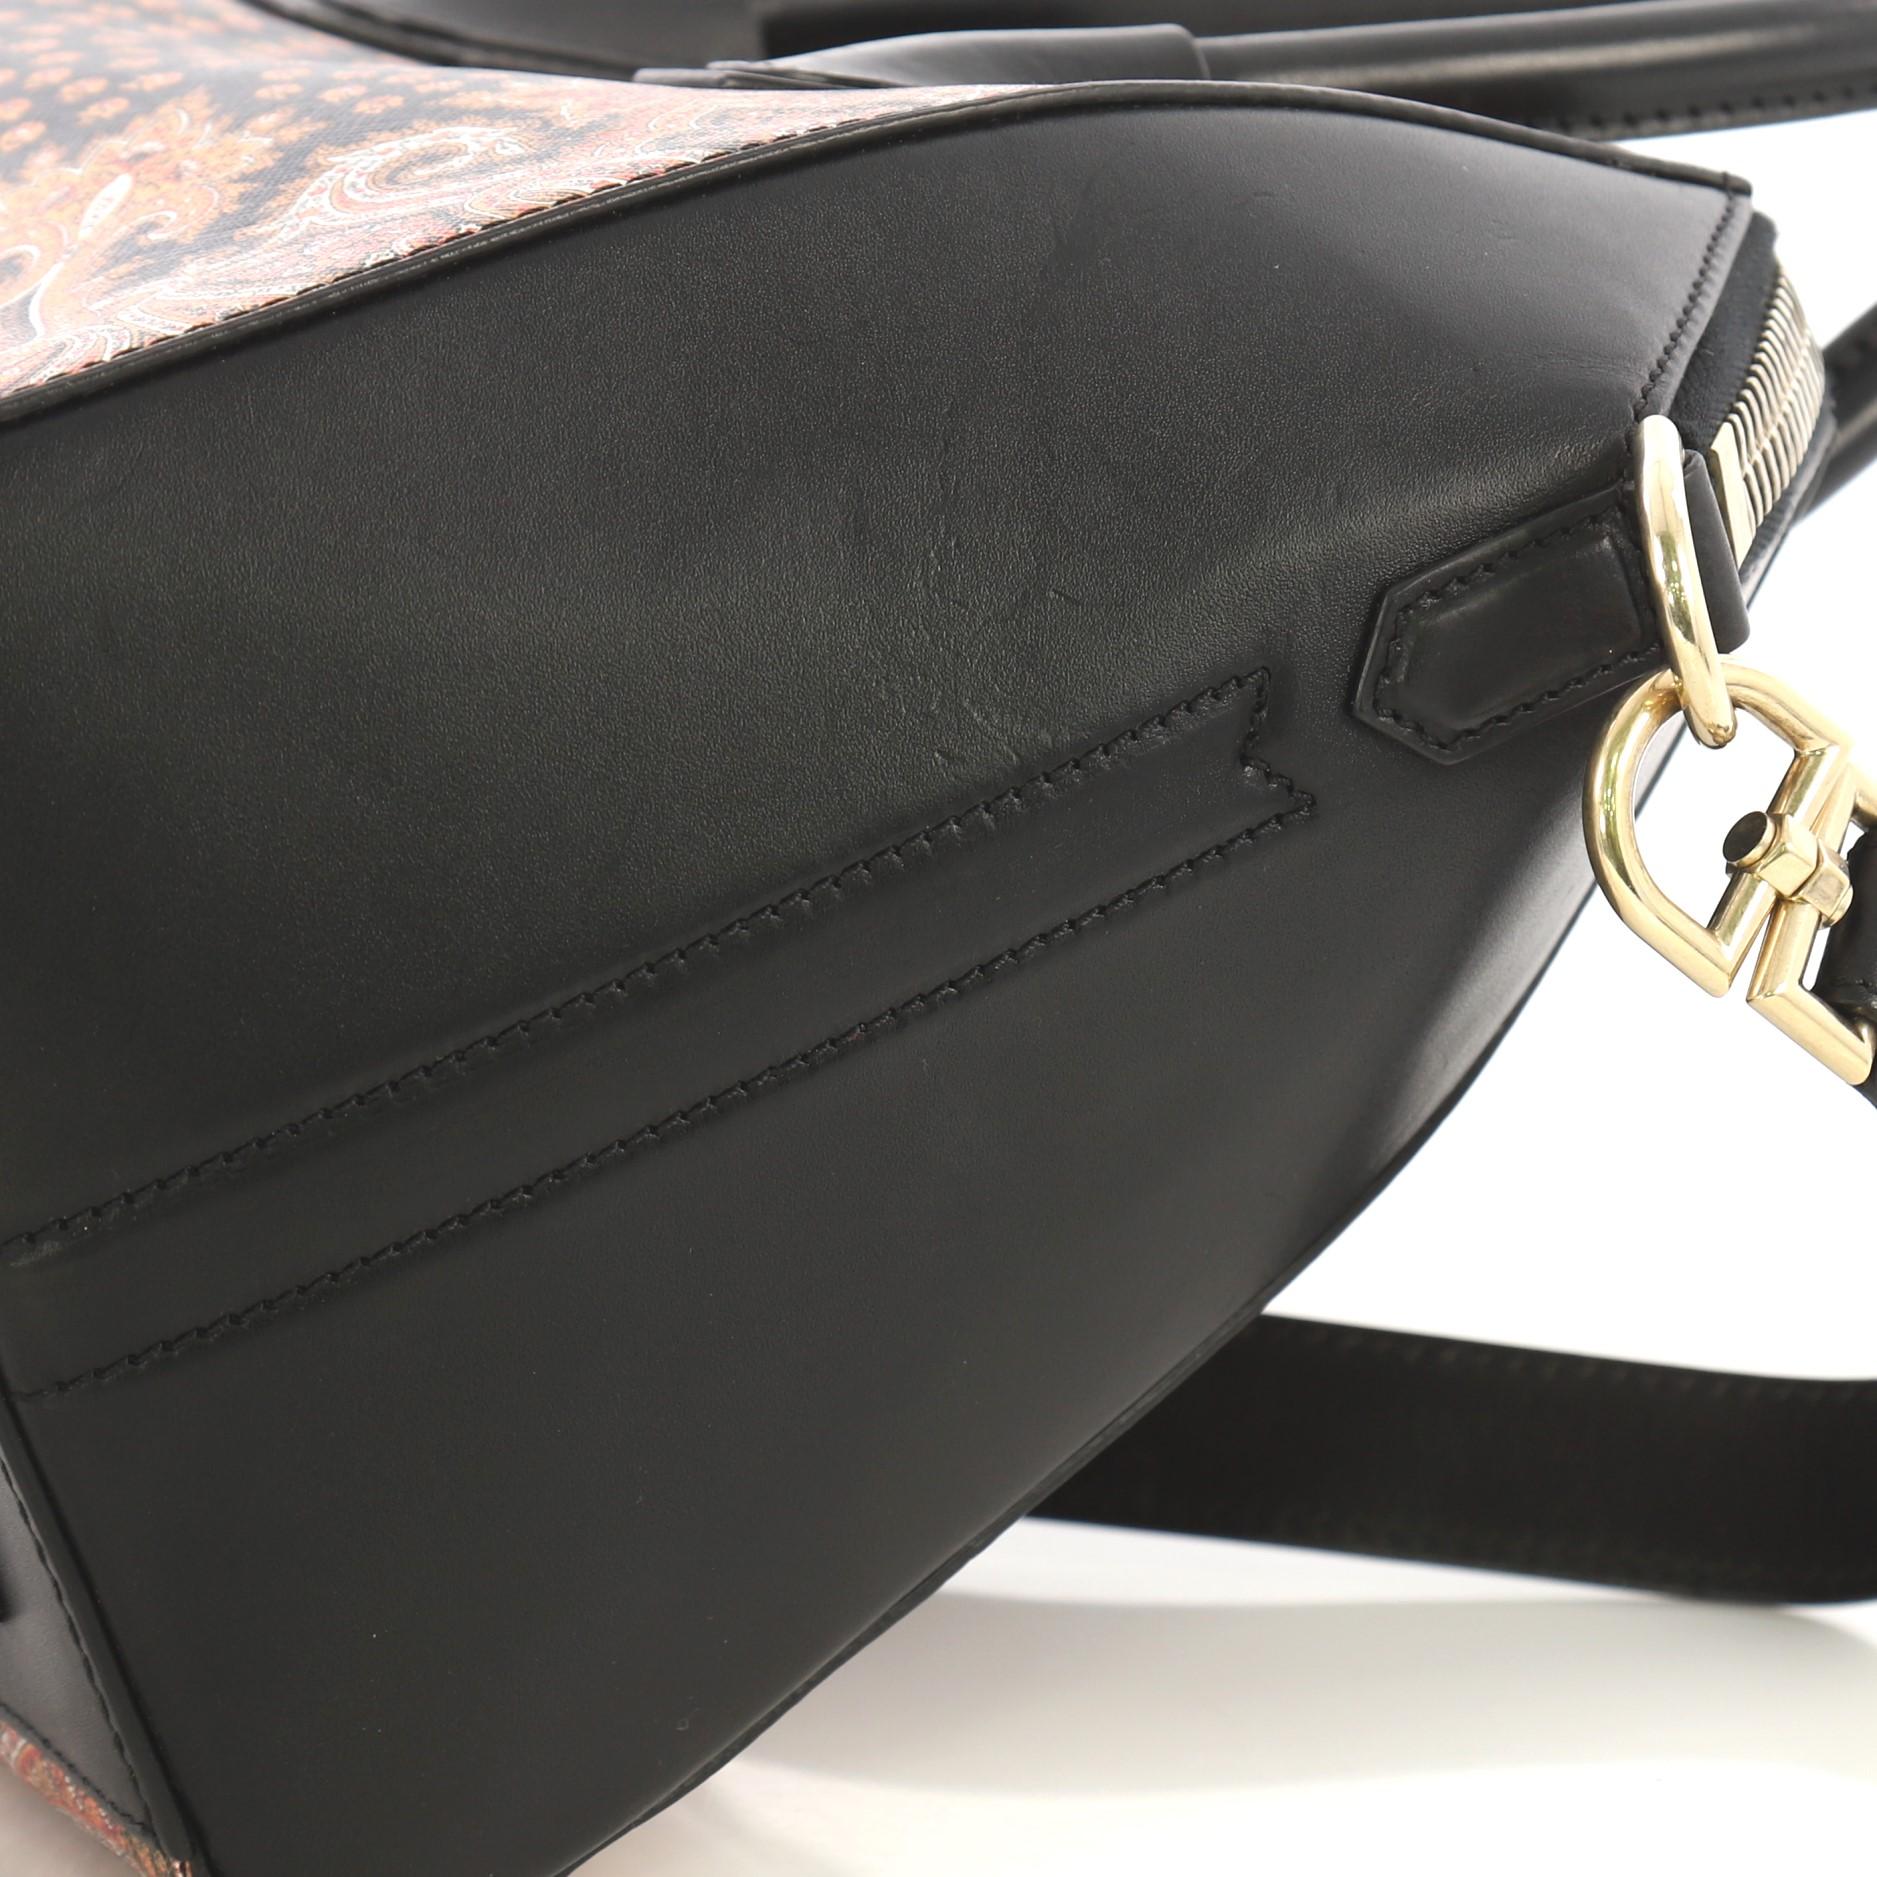 Givenchy Antigona Bag Printed Leather Mini 1